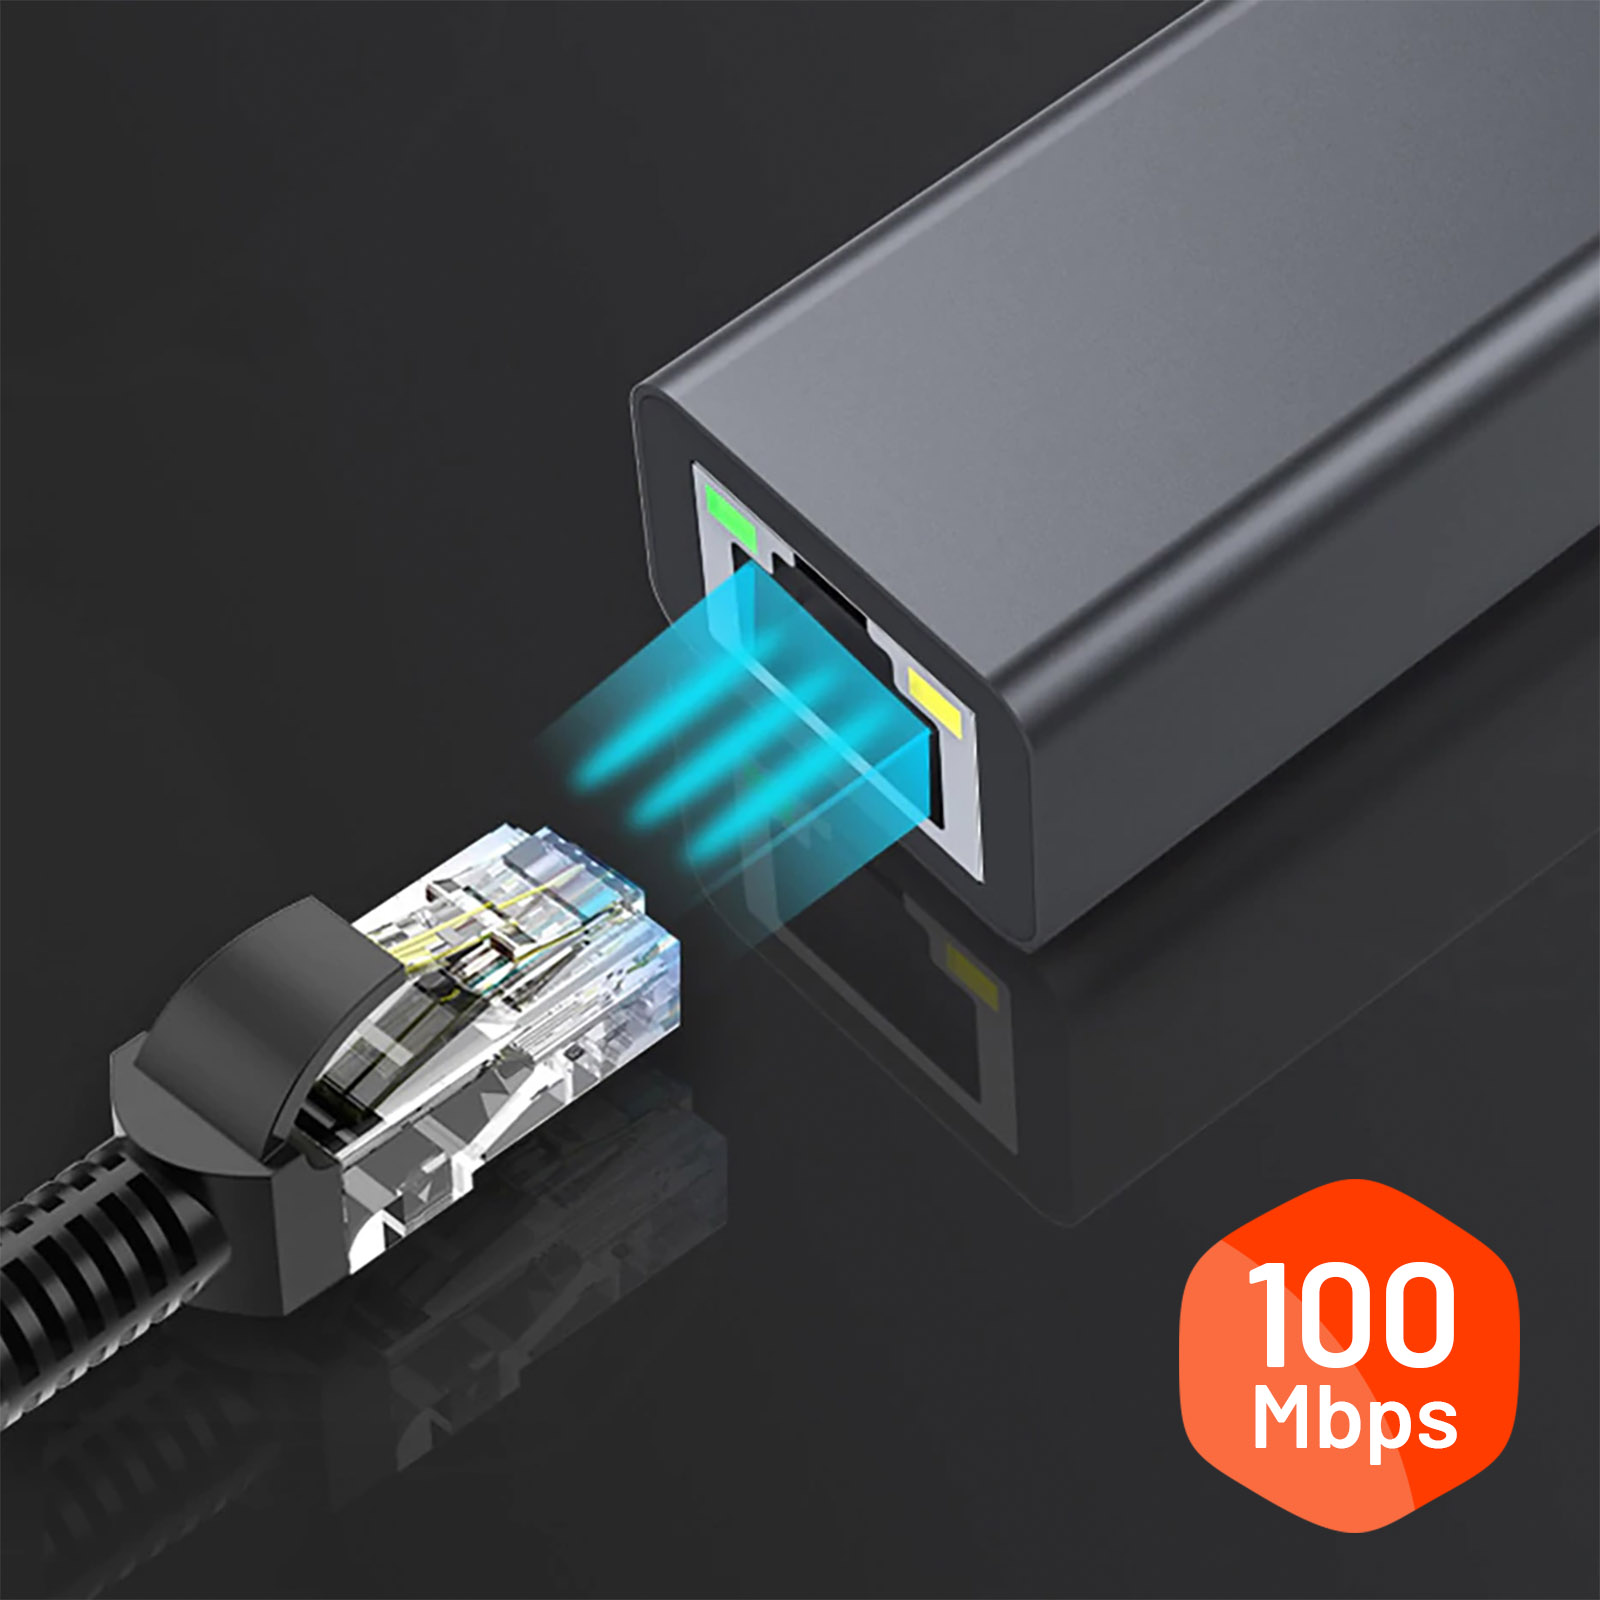 adaptateur Micro USB vers RJ45, adaptateur Ethernet LAN, pour  Fire TV,  Mini Chromecast, Google Home